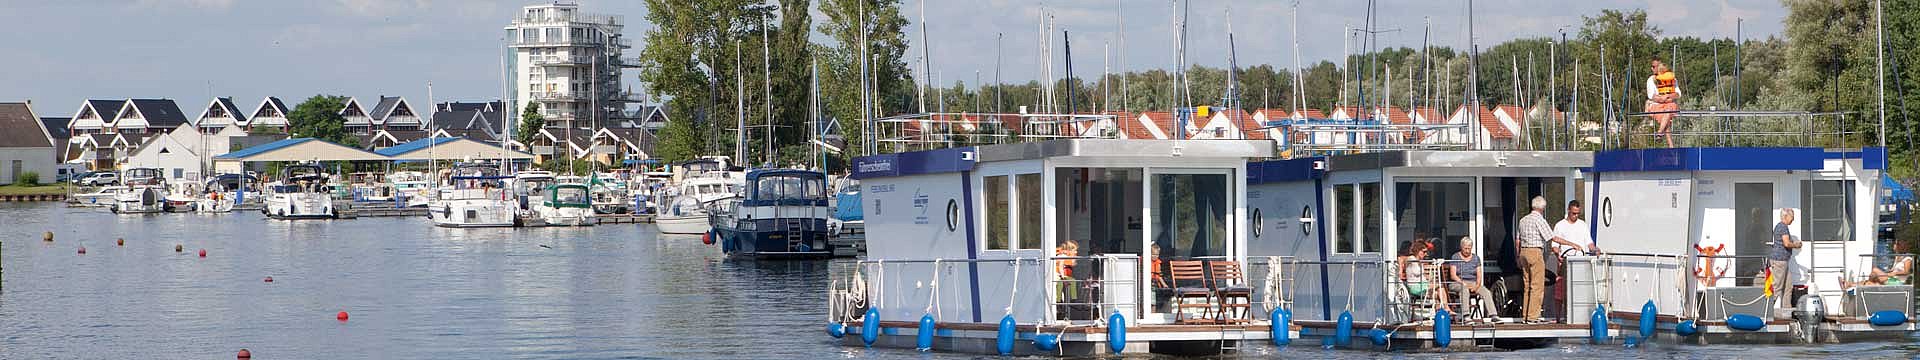 Die Febomobile in der Flotte der Verkaufsboote und am Verkaufssteg zu finden im Hafendorf Müritz.